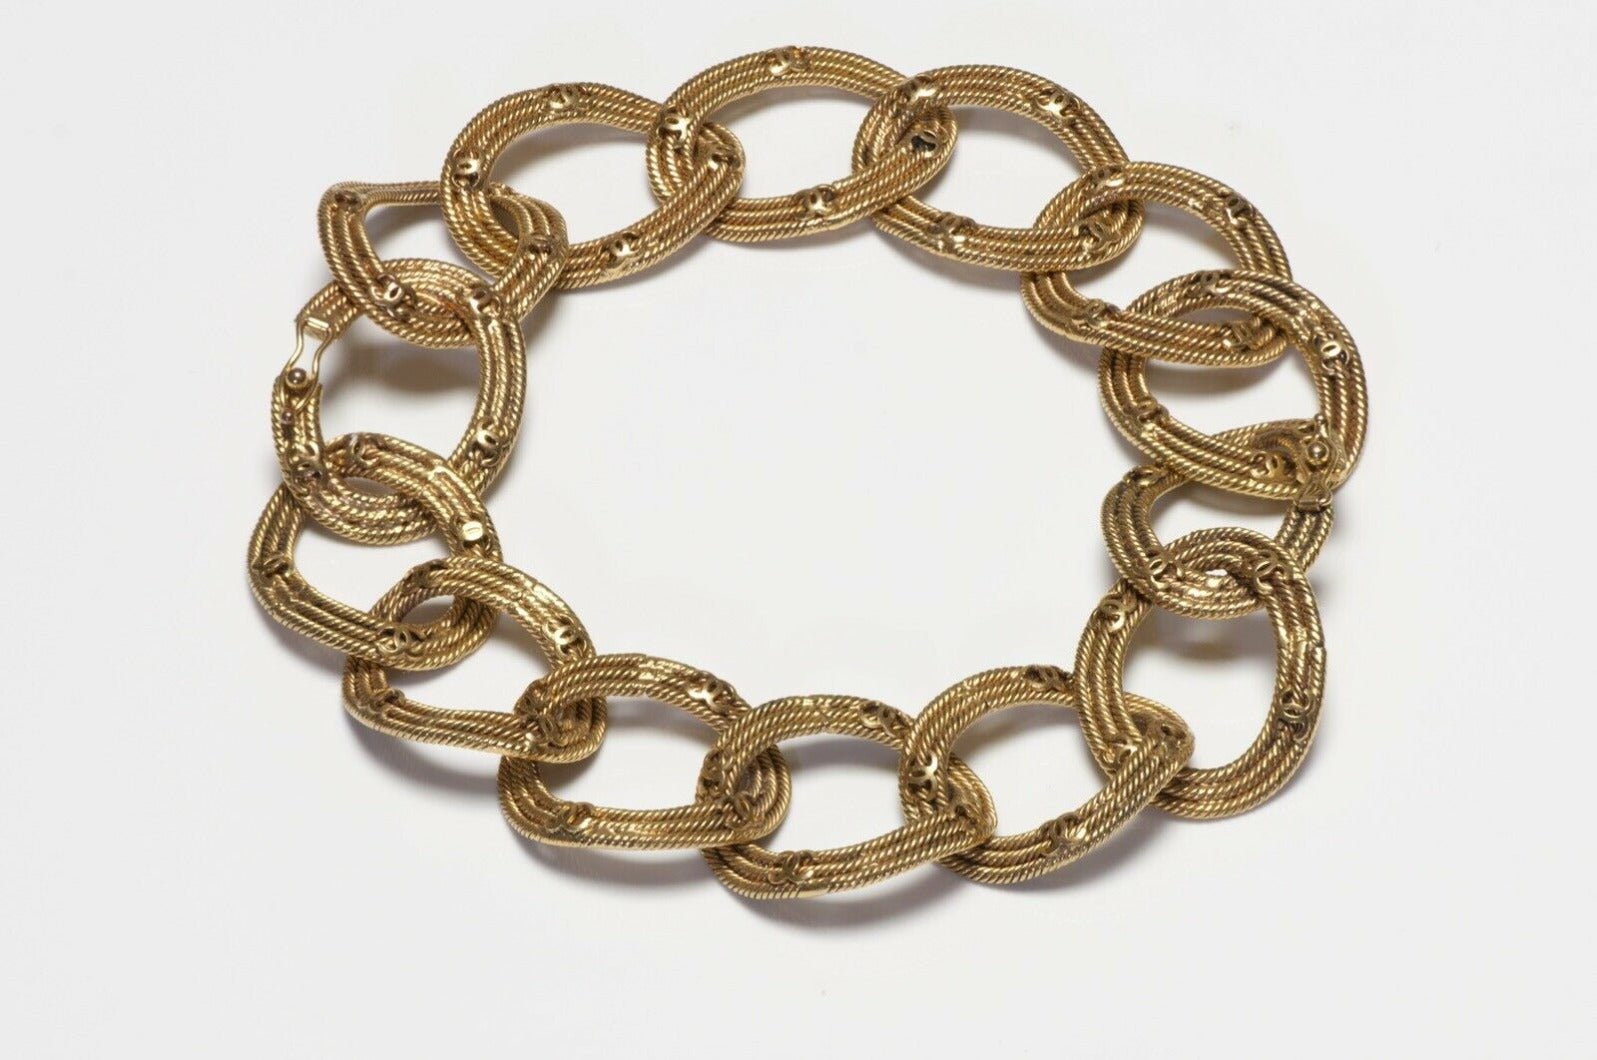 CHANEL Paris 1996 CC Woven Chain Convertible 2 Bracelets Necklace - DSF Antique Jewelry